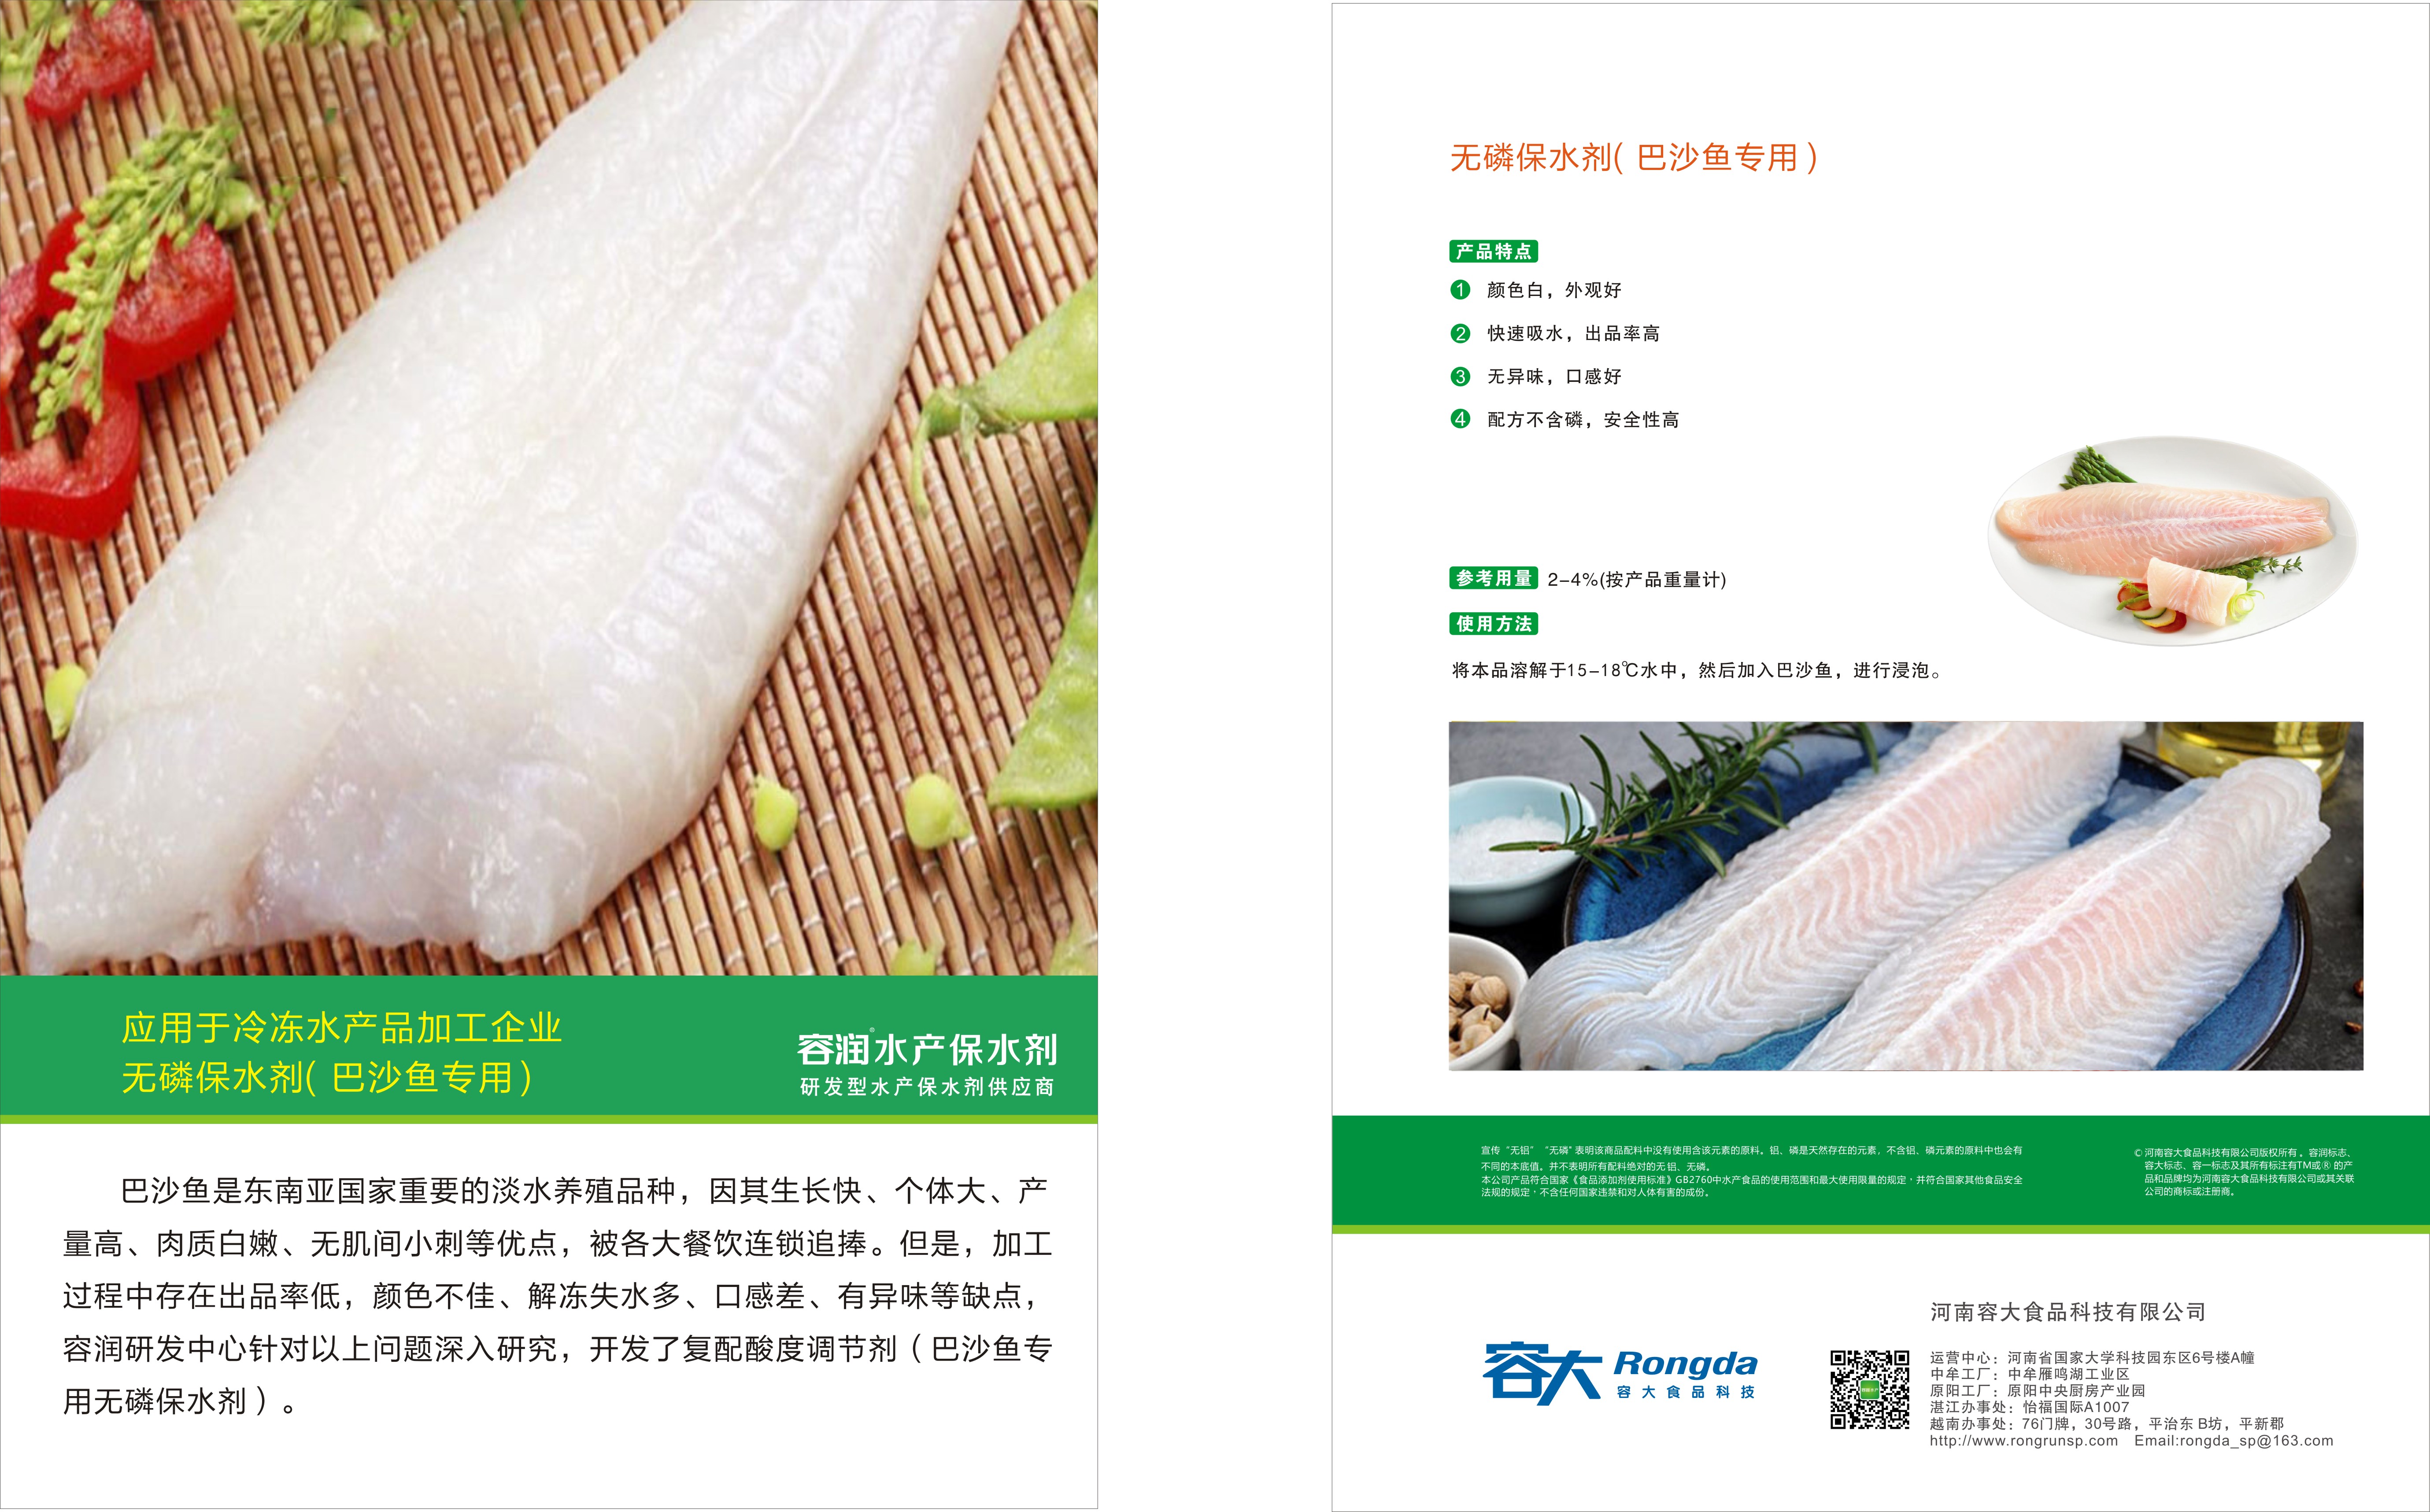 郑州容大食品有限公司——致力于打造全球领先的速冻食品配料服务商(图3)